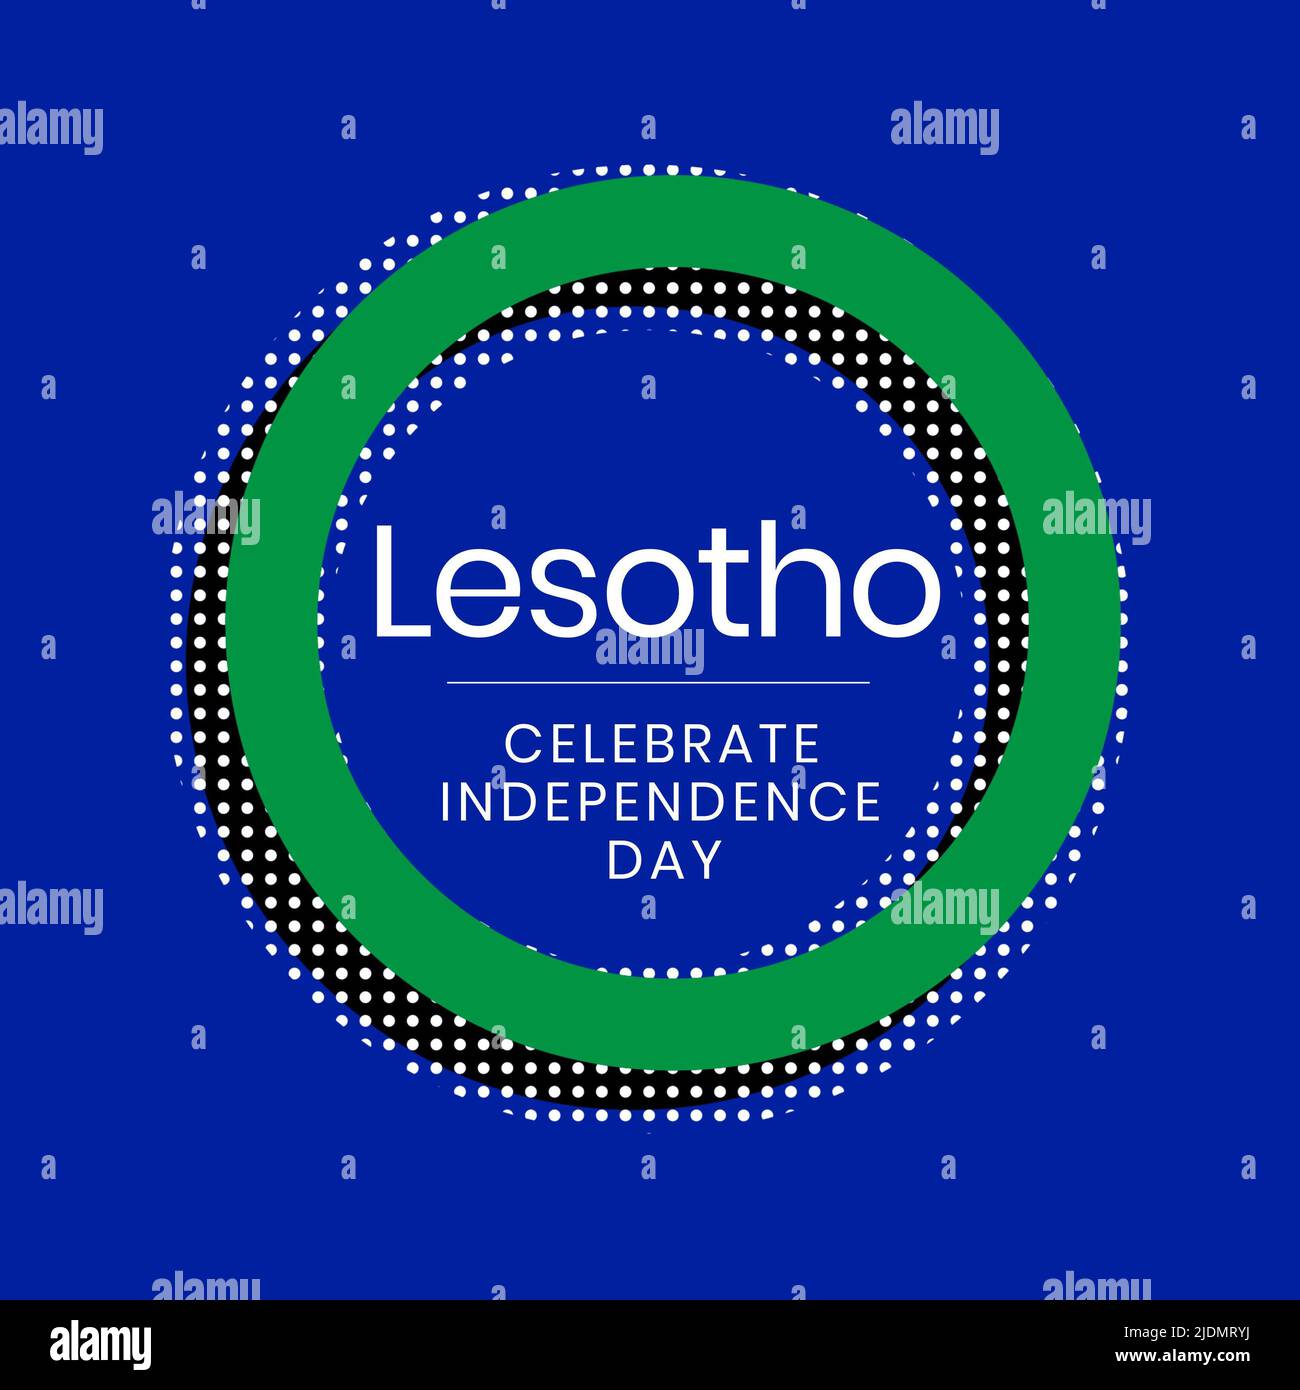 Illustration du texte de la fête de l'indépendance du lesotho dans un cercle vert avec des points blancs et noirs Banque D'Images